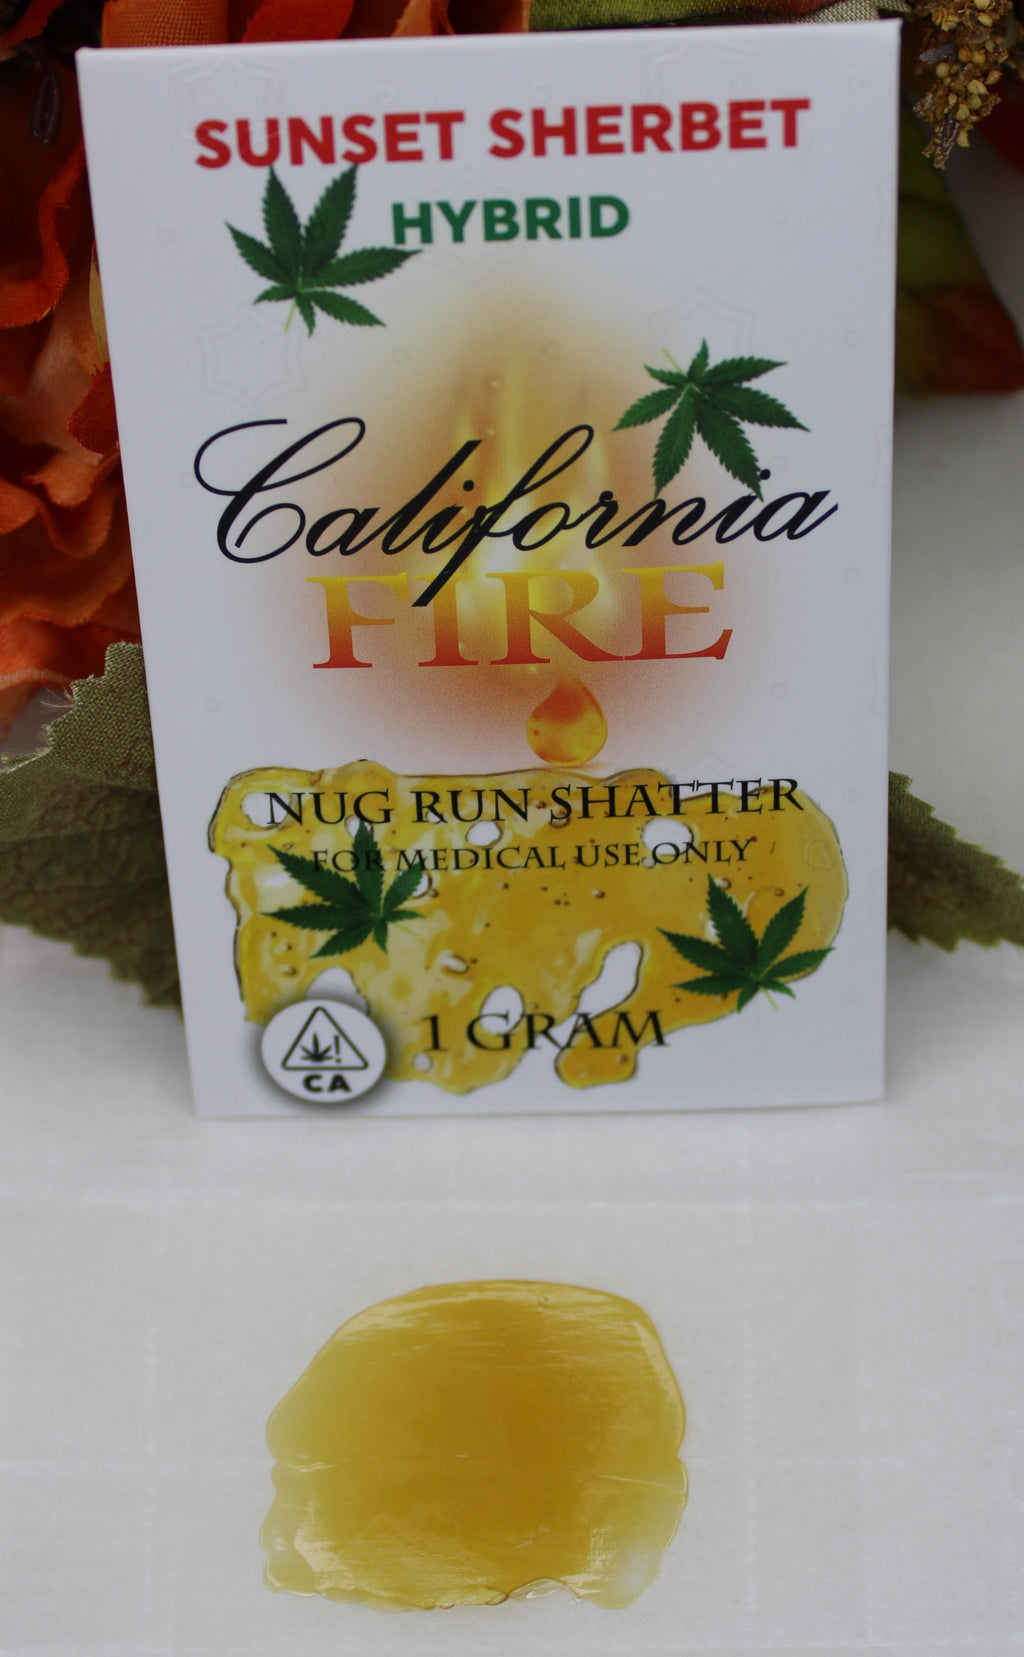 California Fire Nug Run Shatter "Sunset Sherbert" (1g)